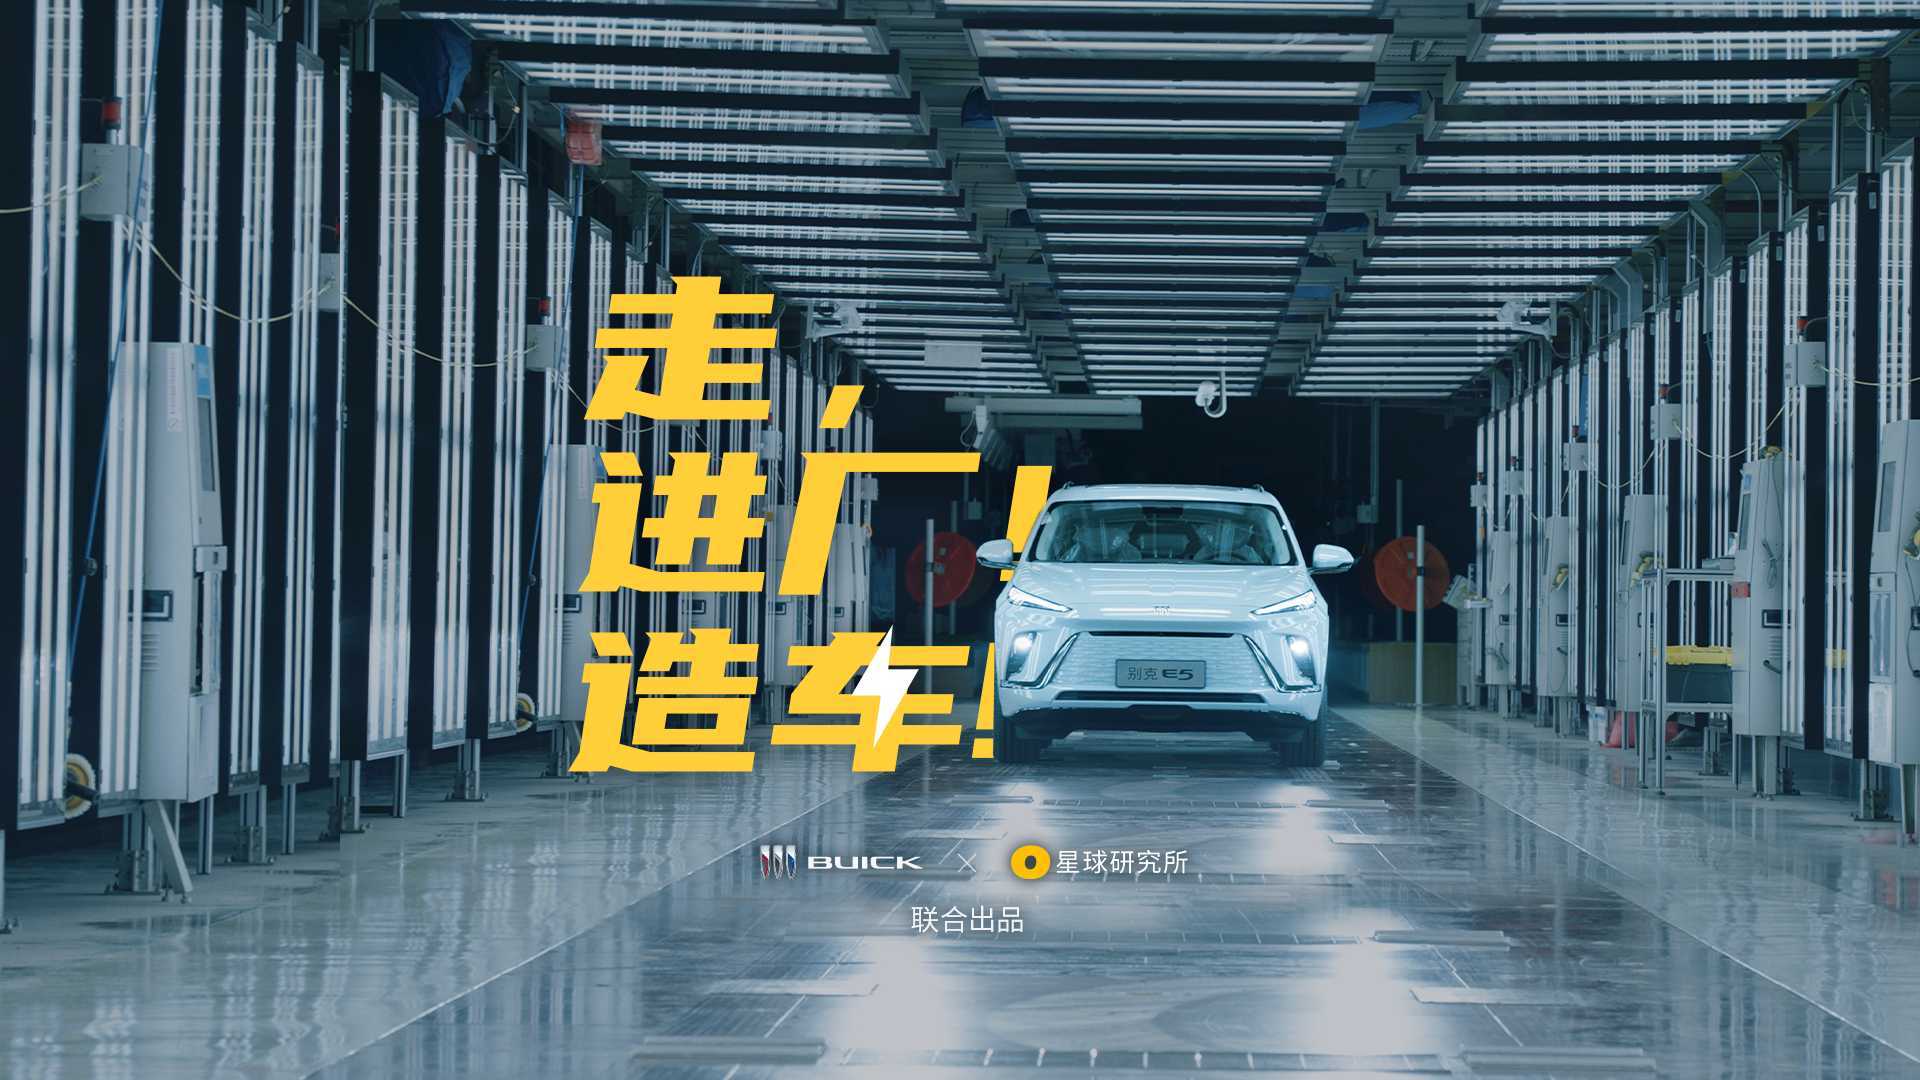 去武汉，看超级工厂如何造车！感受机械美学（别克 x 星球研究所）